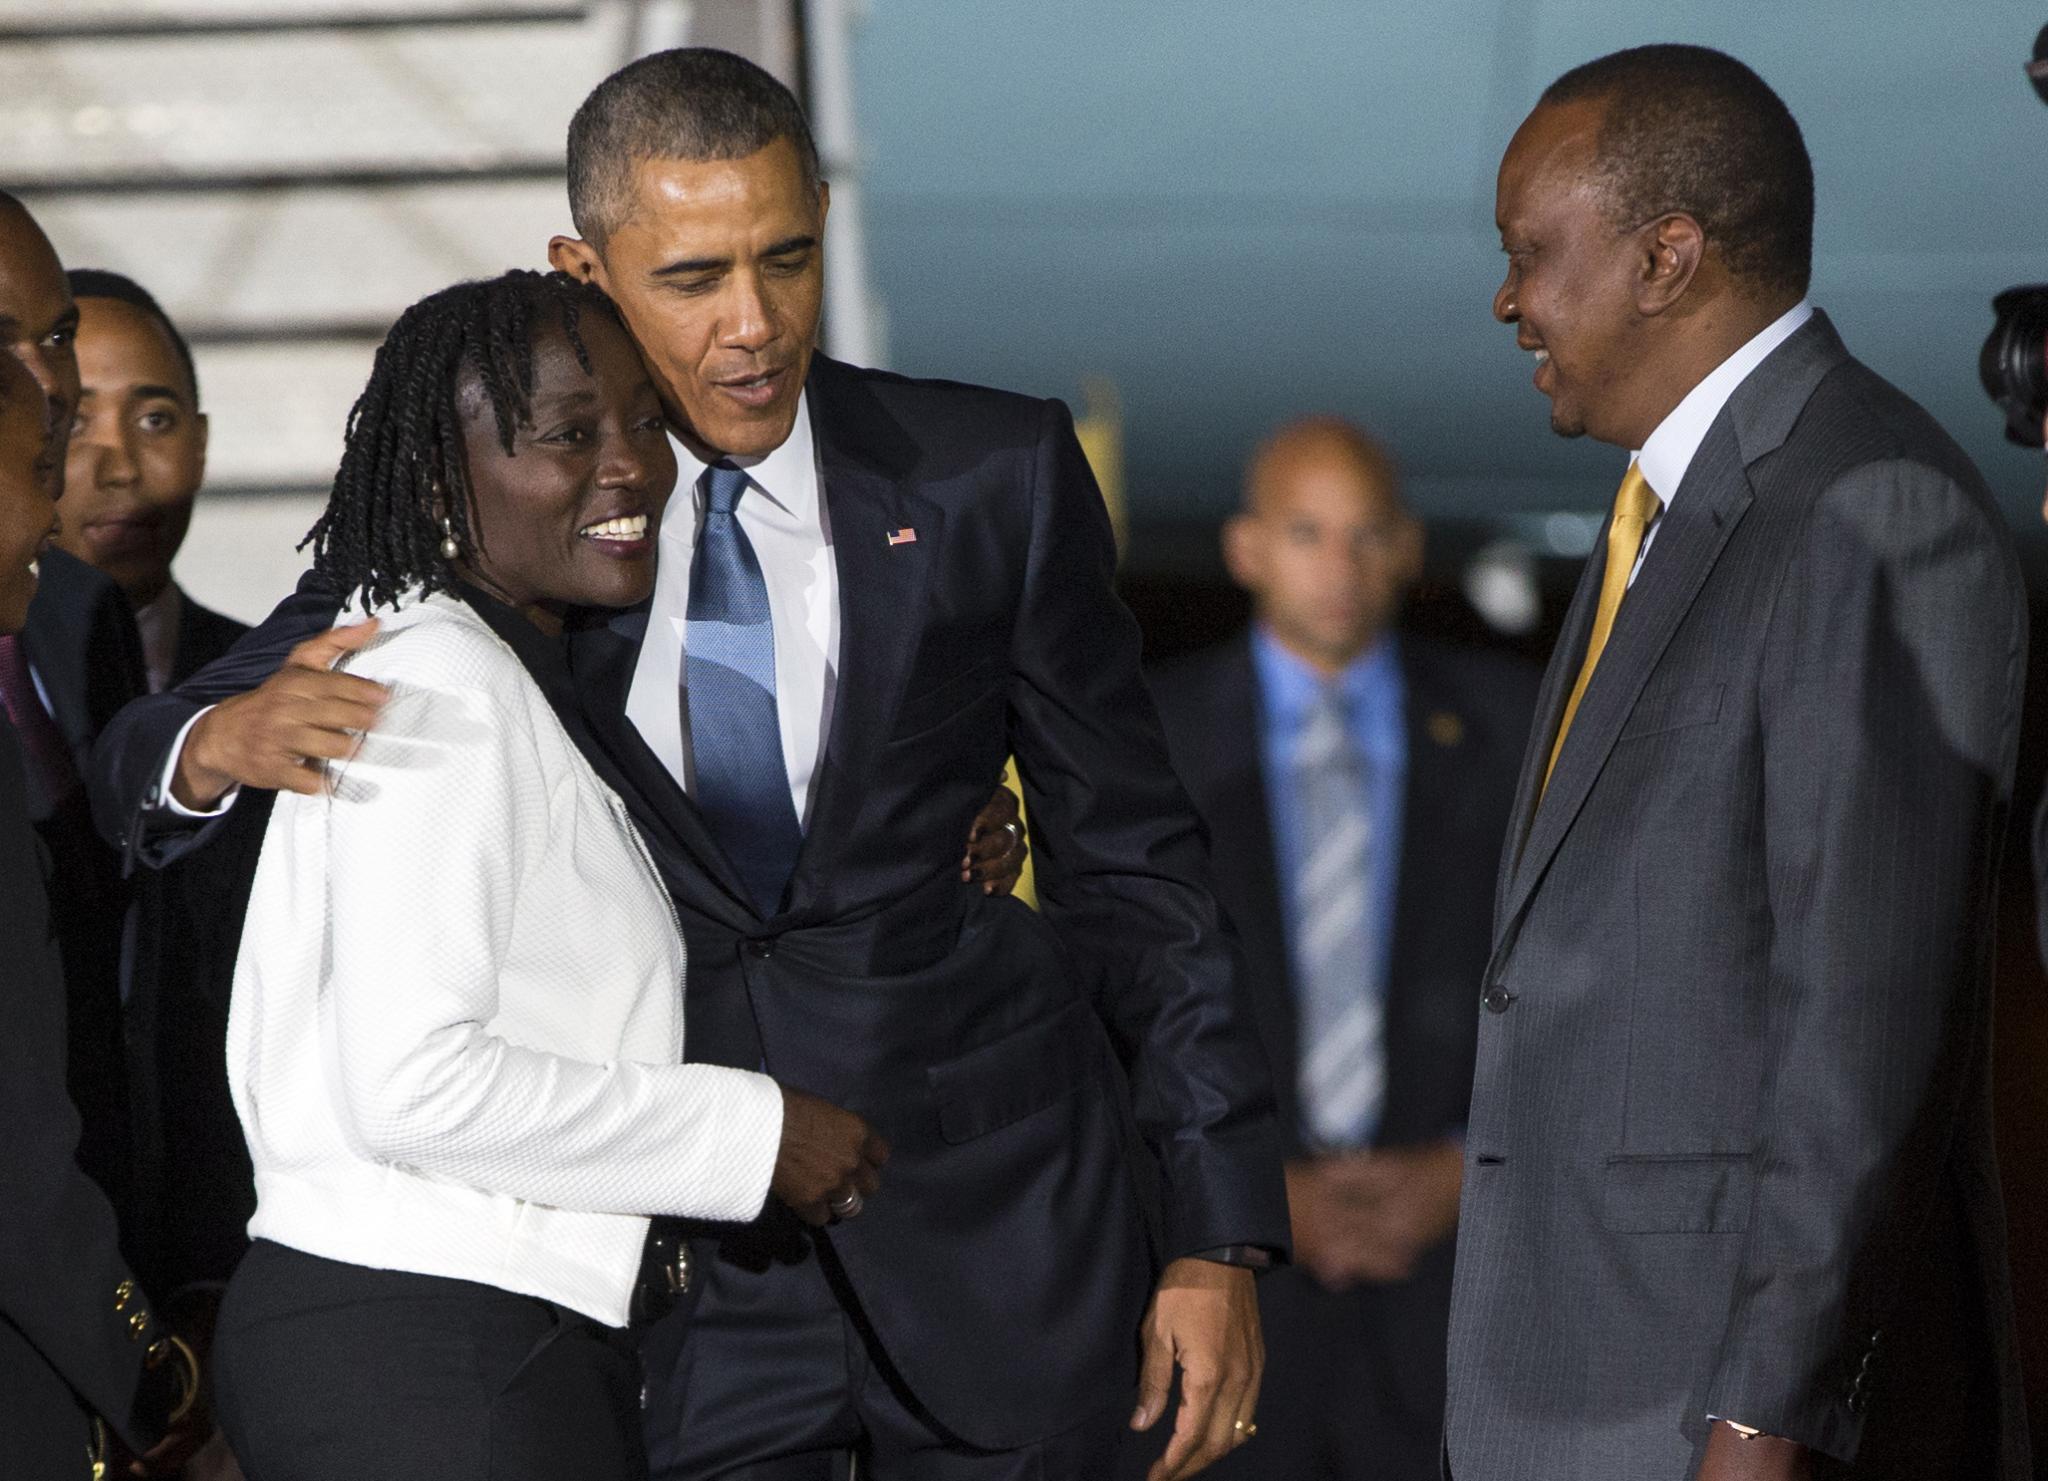 President Obama Visits Half-Sister in Kenya
